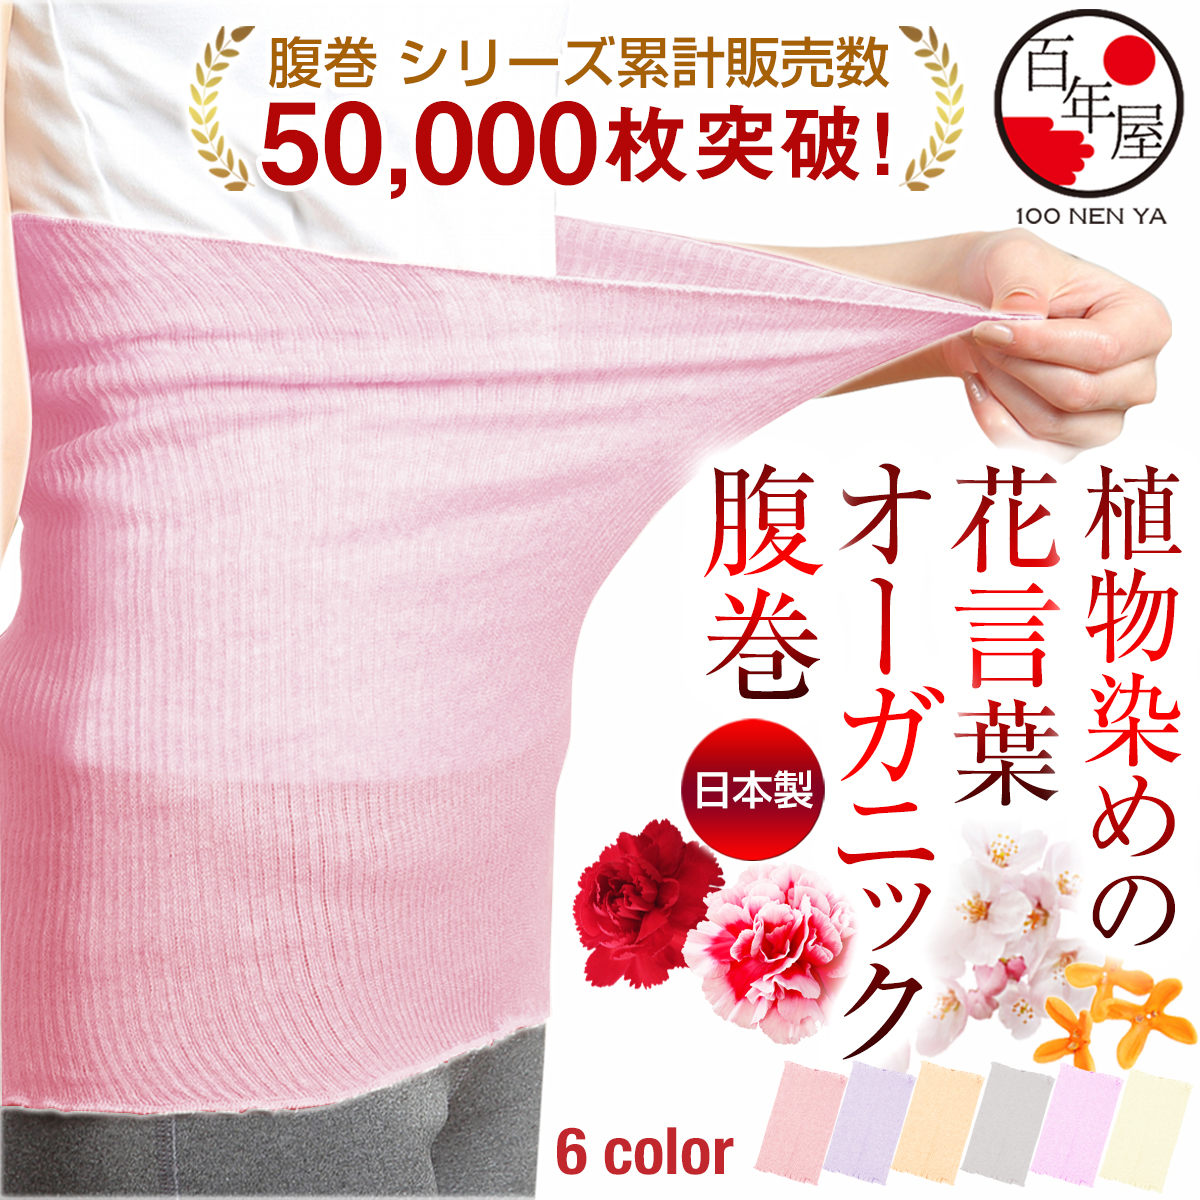 腹巻 レディース メンズ 日本製 SALE 2000→980 薄手 腹巻き はらまき コットン 綿 ...